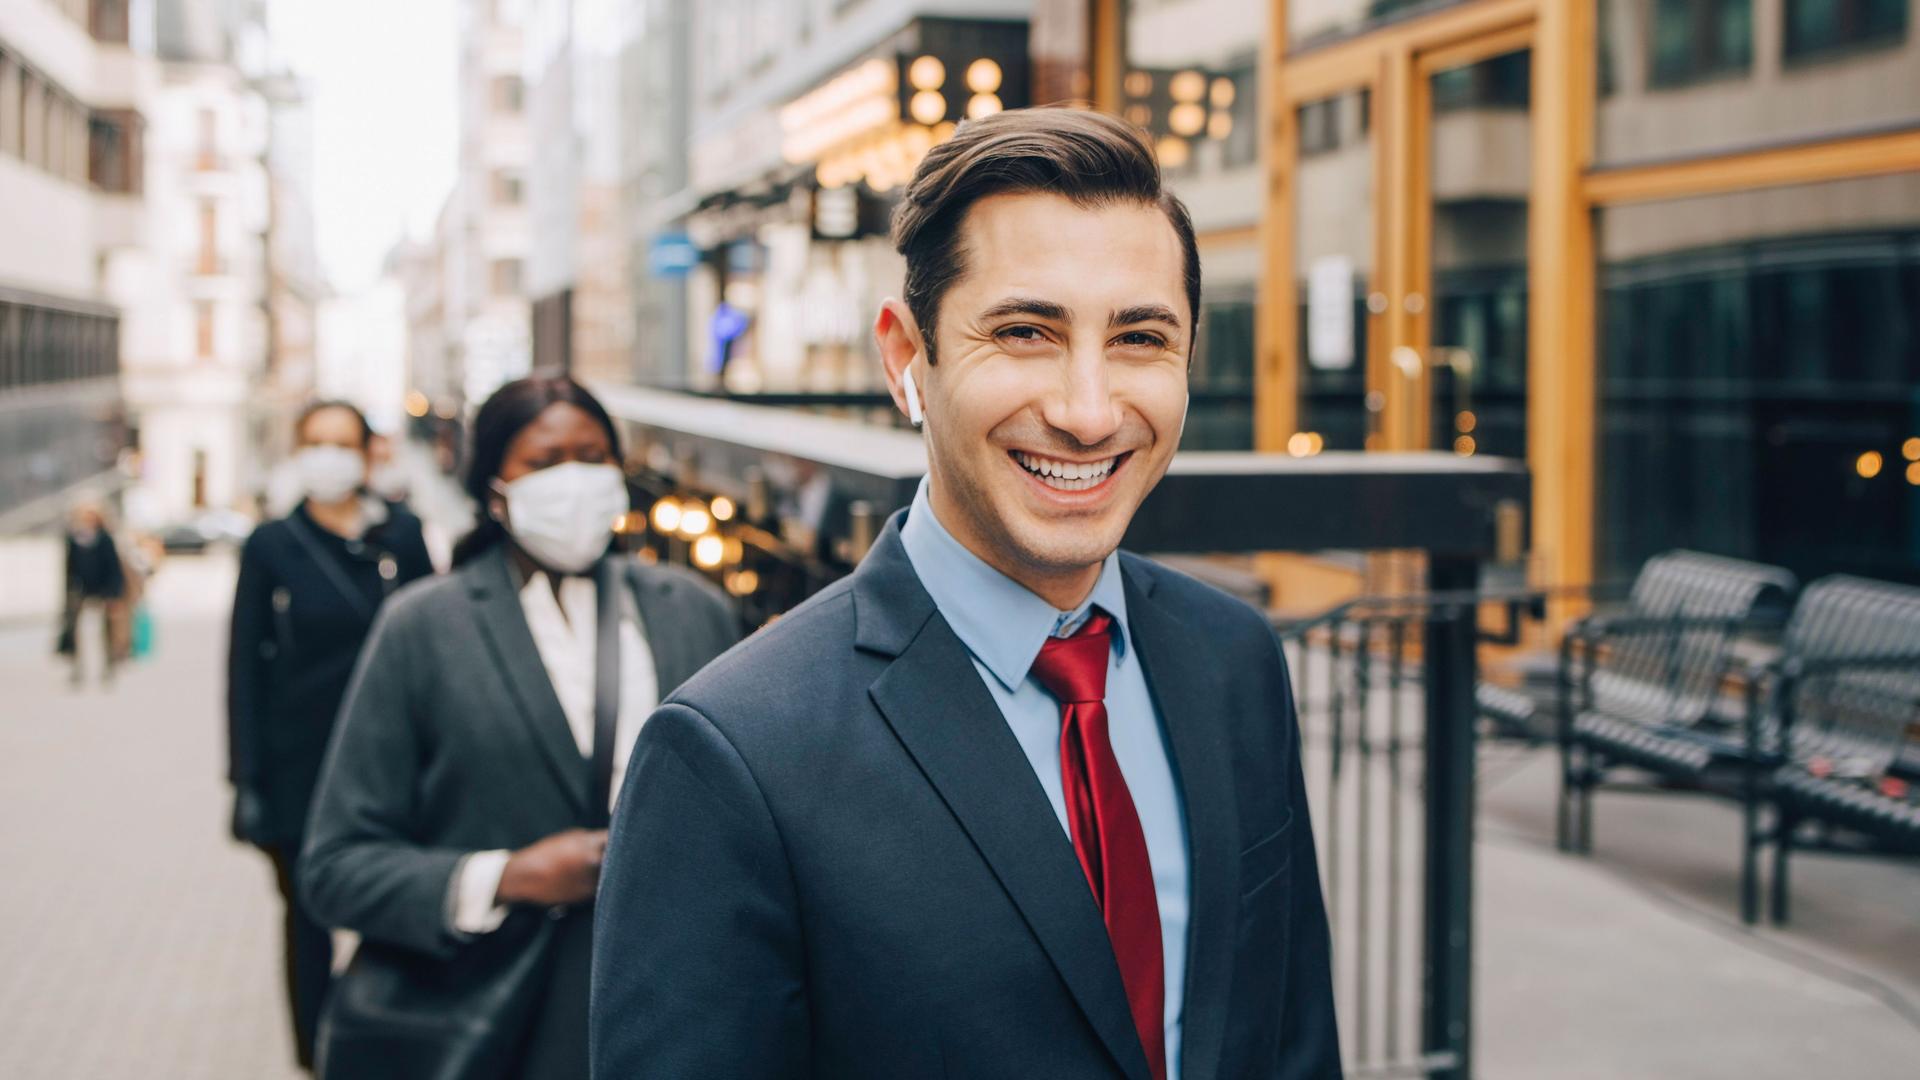 Ein junger Mann in Business-Kleidung läuft auf einer urbanen Straße mit kabellosem Kopfhörer im Ohr und blickt dabei lächelnd in die Kamera, 